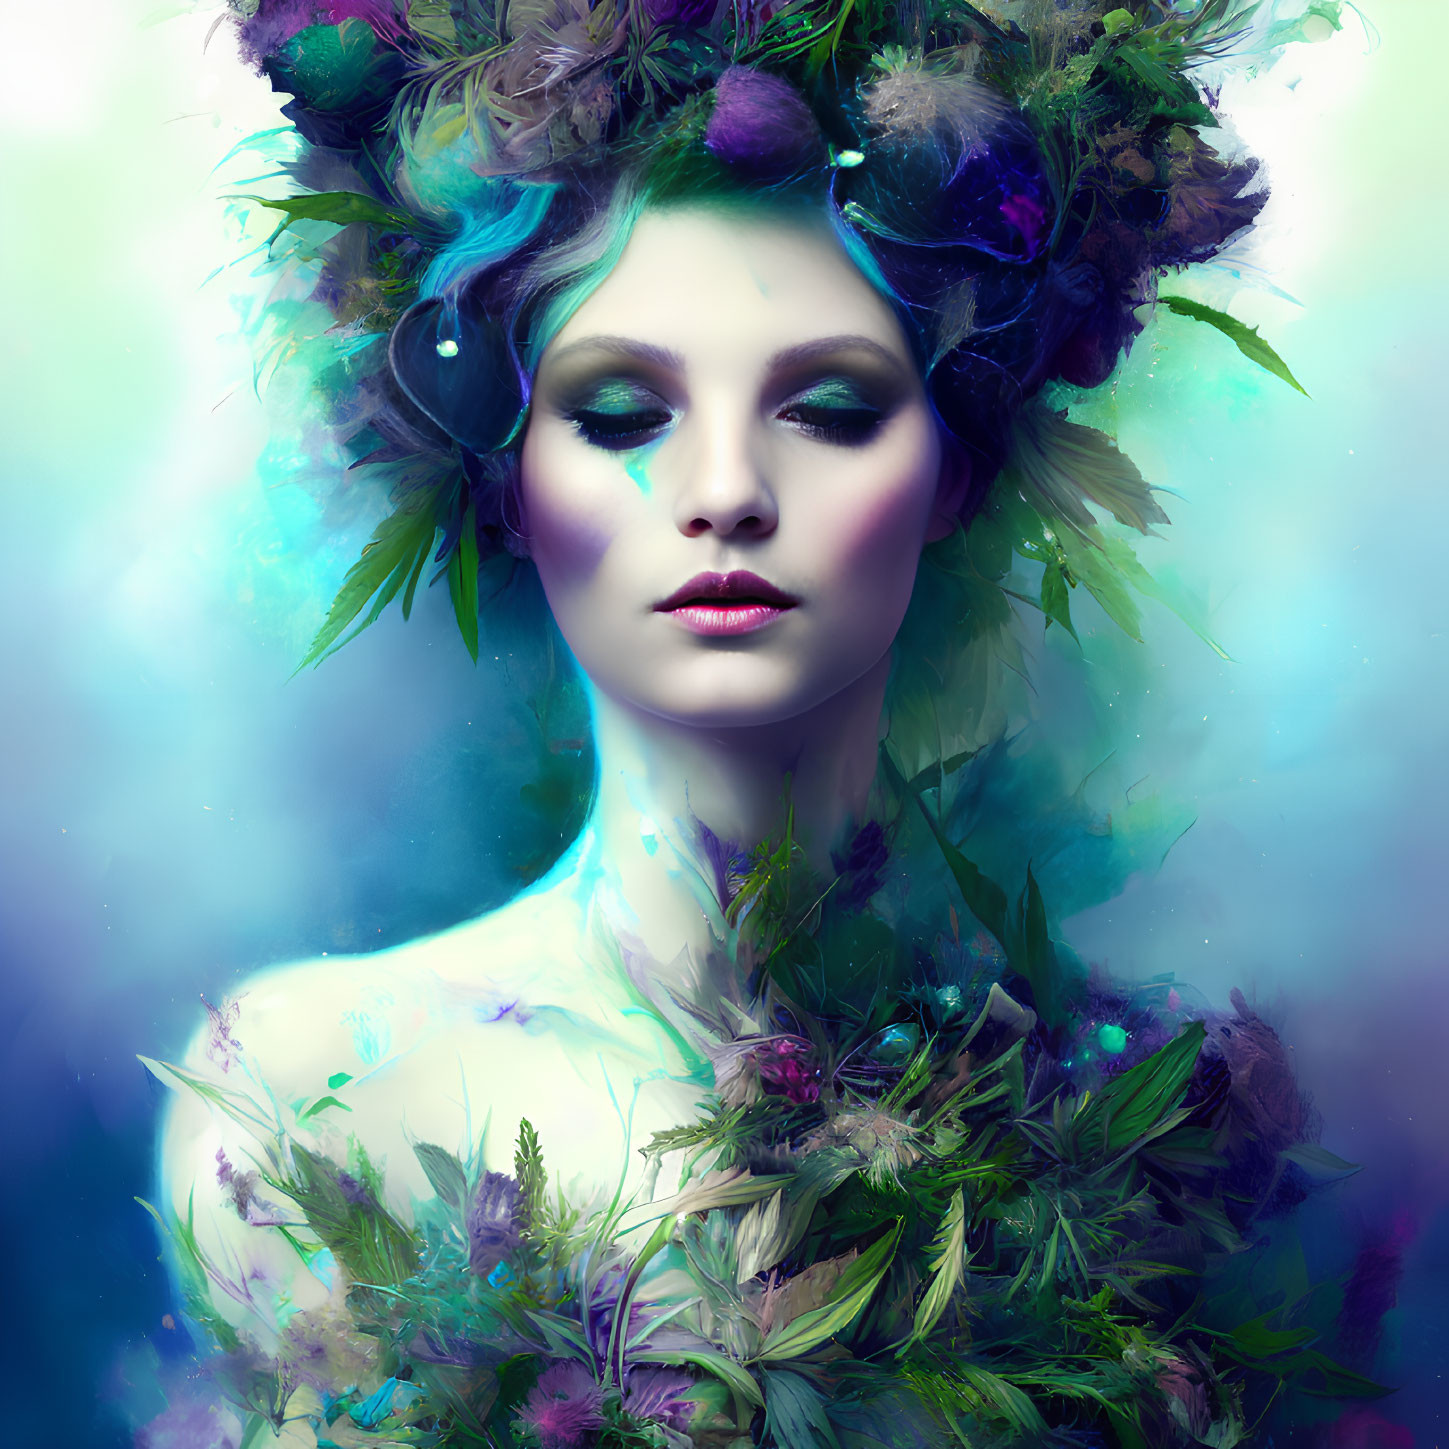 Vibrant floral surreal portrait of a mystical woman